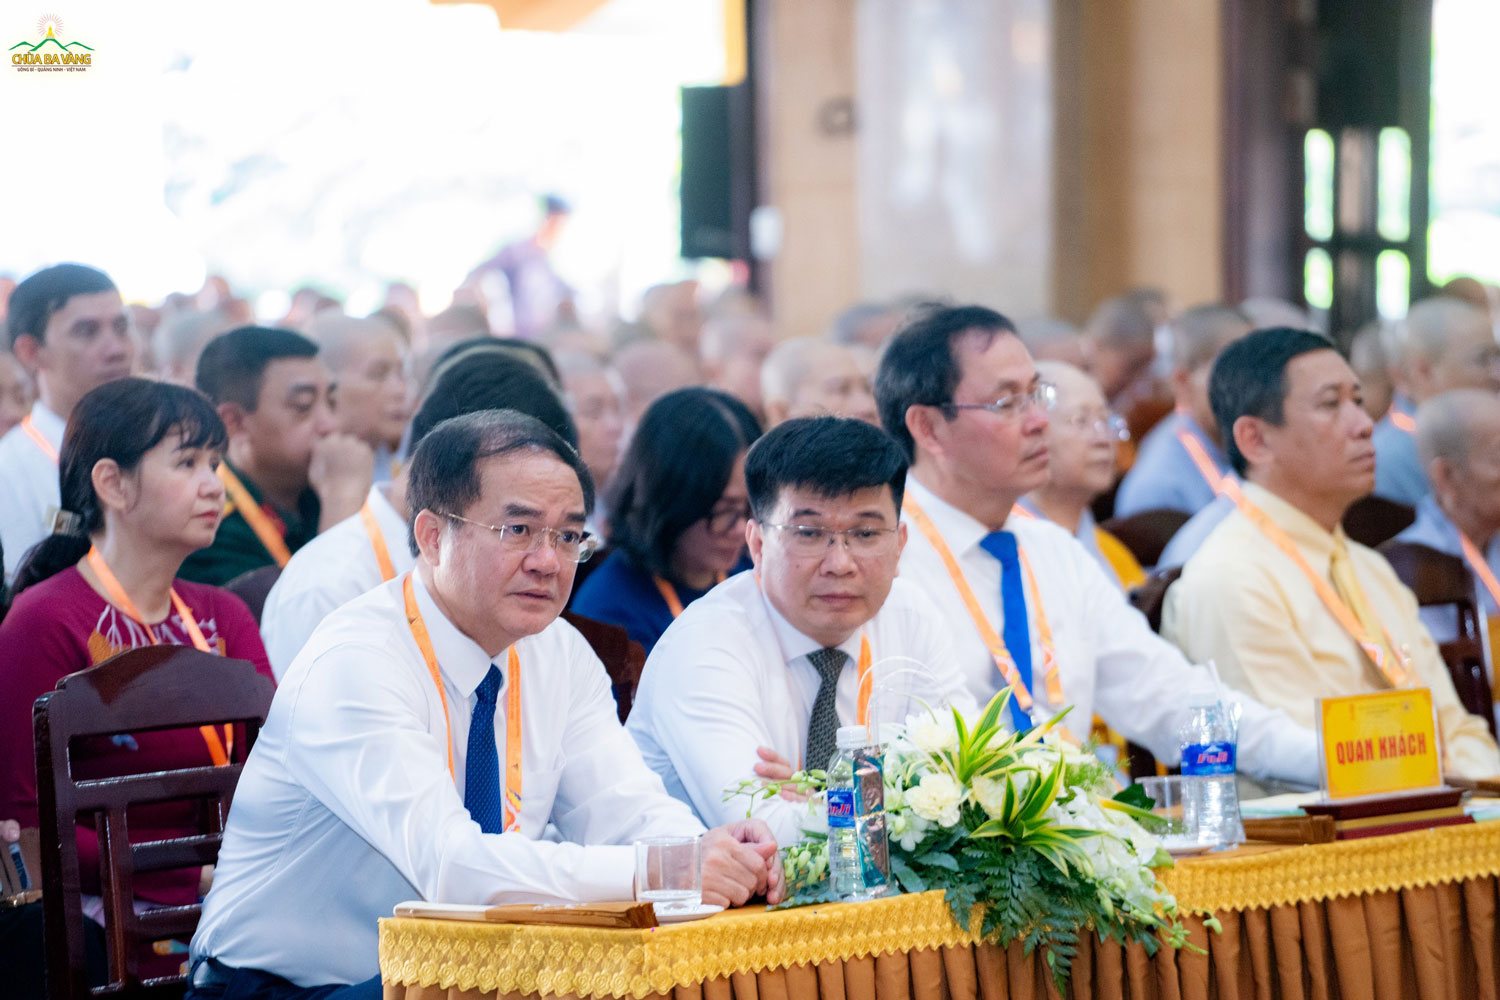 Ông Vũ Chiến Thắng - Thứ trưởng Bộ Nội vụ (ngoài cùng bên trái), ông Lê Minh Khánh - Phó Vụ trưởng Vụ Tôn giáo thuộc Ban Dân vận TW cùng các đại biểu quan khách tham dự chương trình